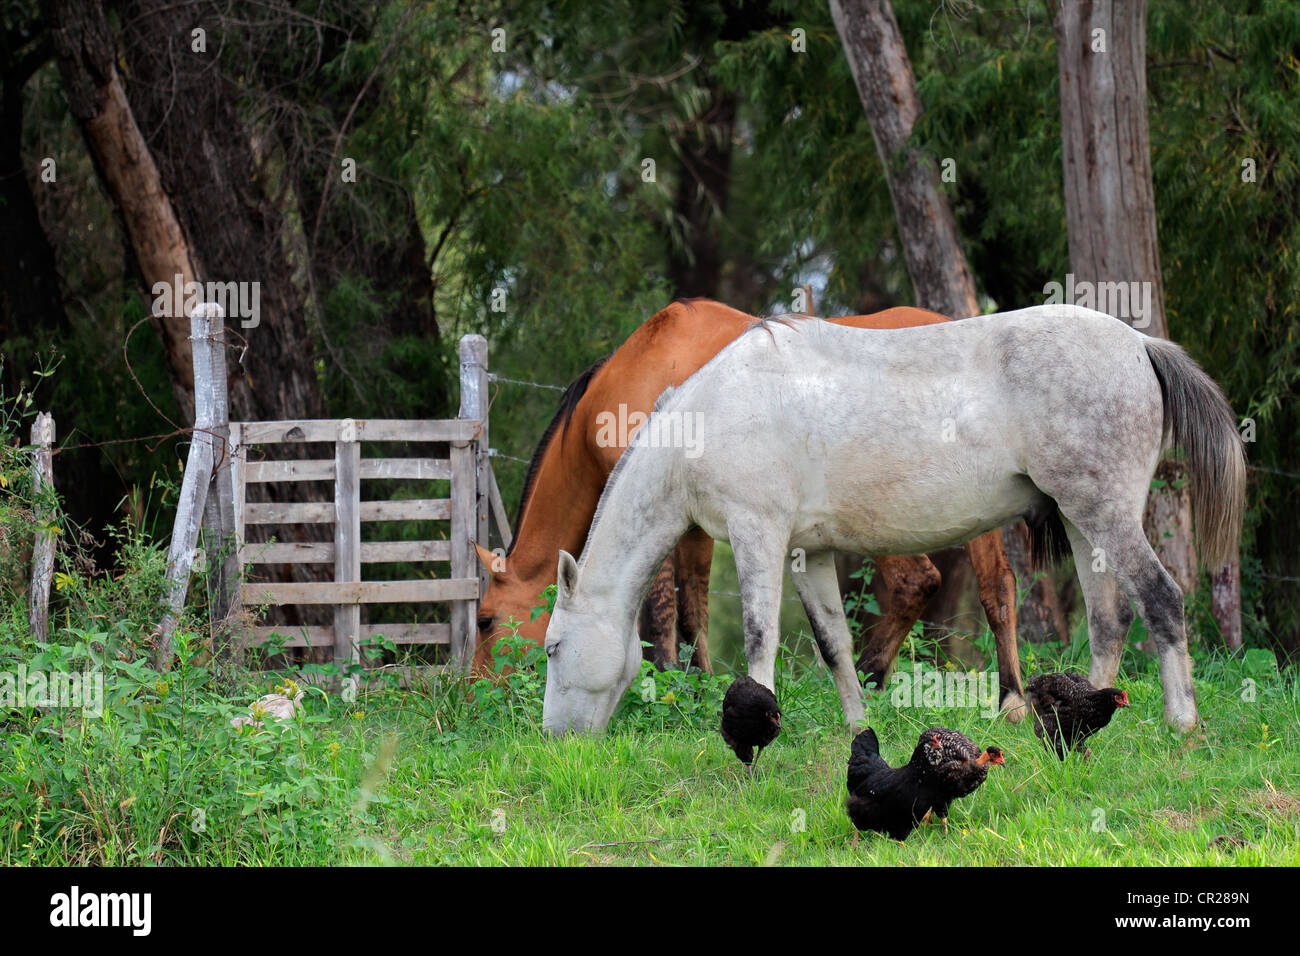 Les chevaux et les poulets dans un ranch rural avec de luxuriants pâturages verts Banque D'Images